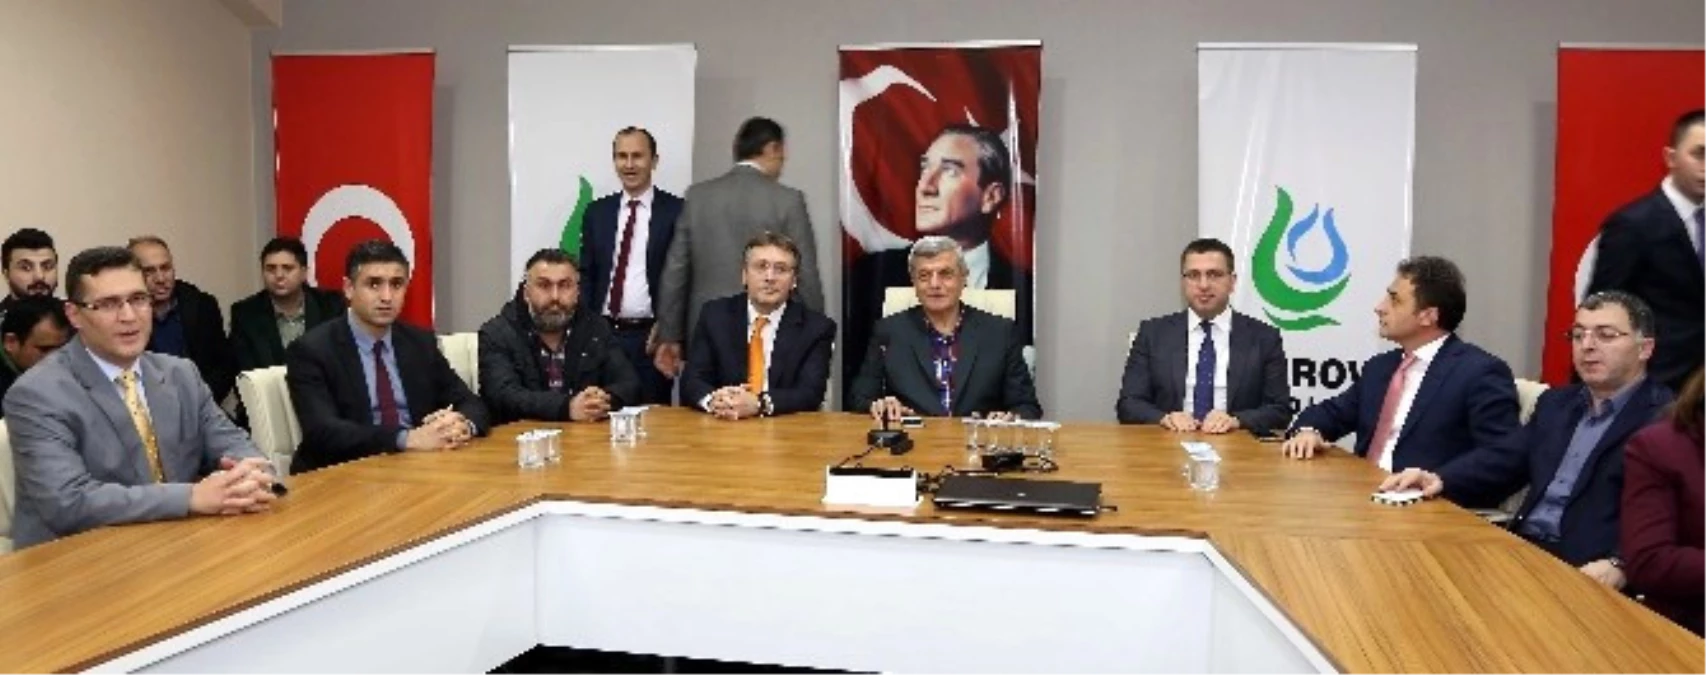 Başkan Karaosmanoğlu, Öğretim Görevlileriyle Buluştu